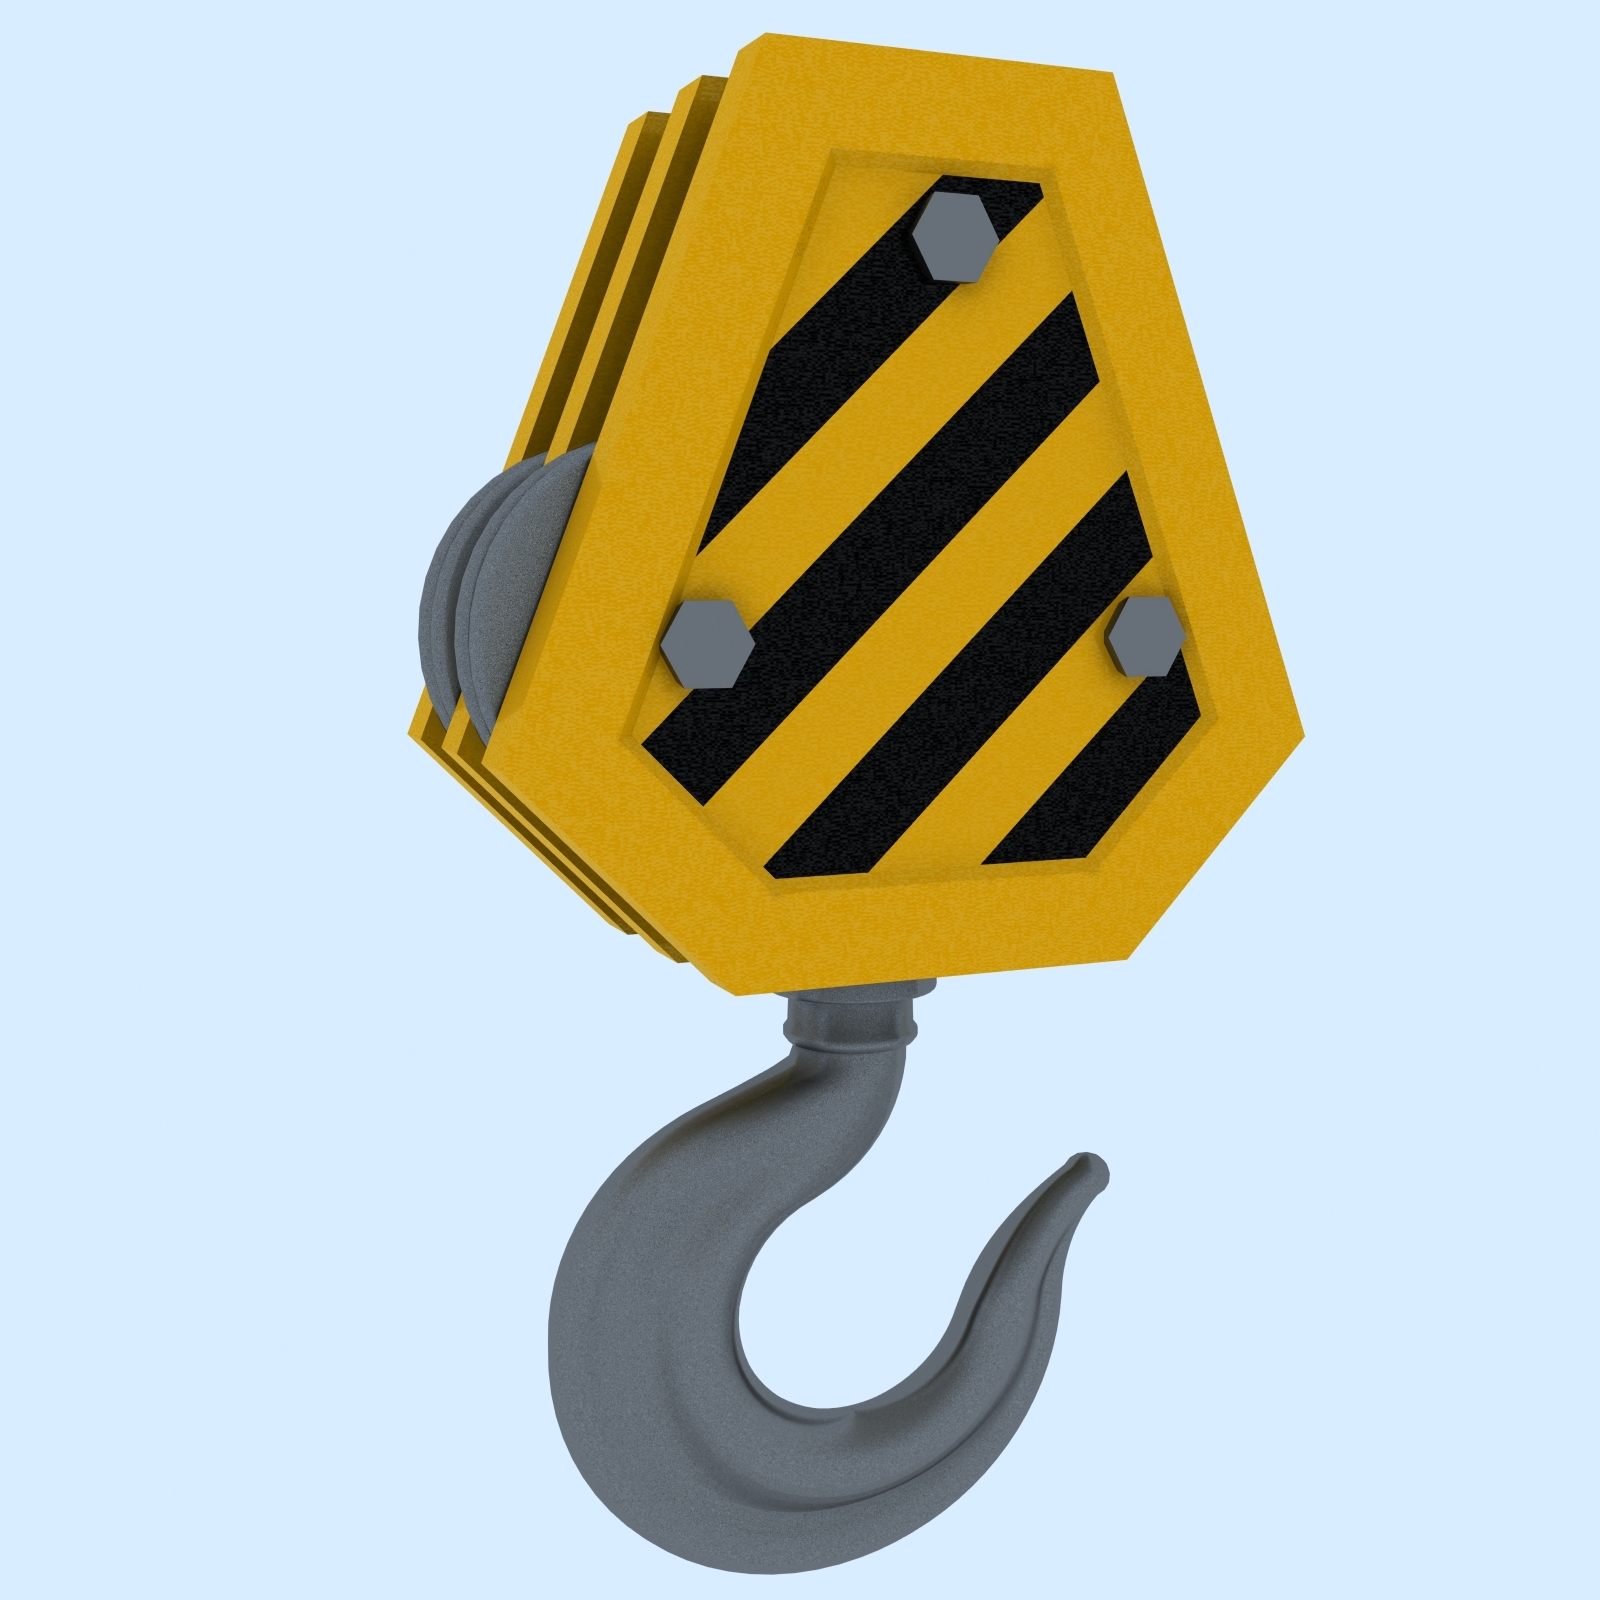 3D Crane Hook 3 Model - TurboSquid 1299764